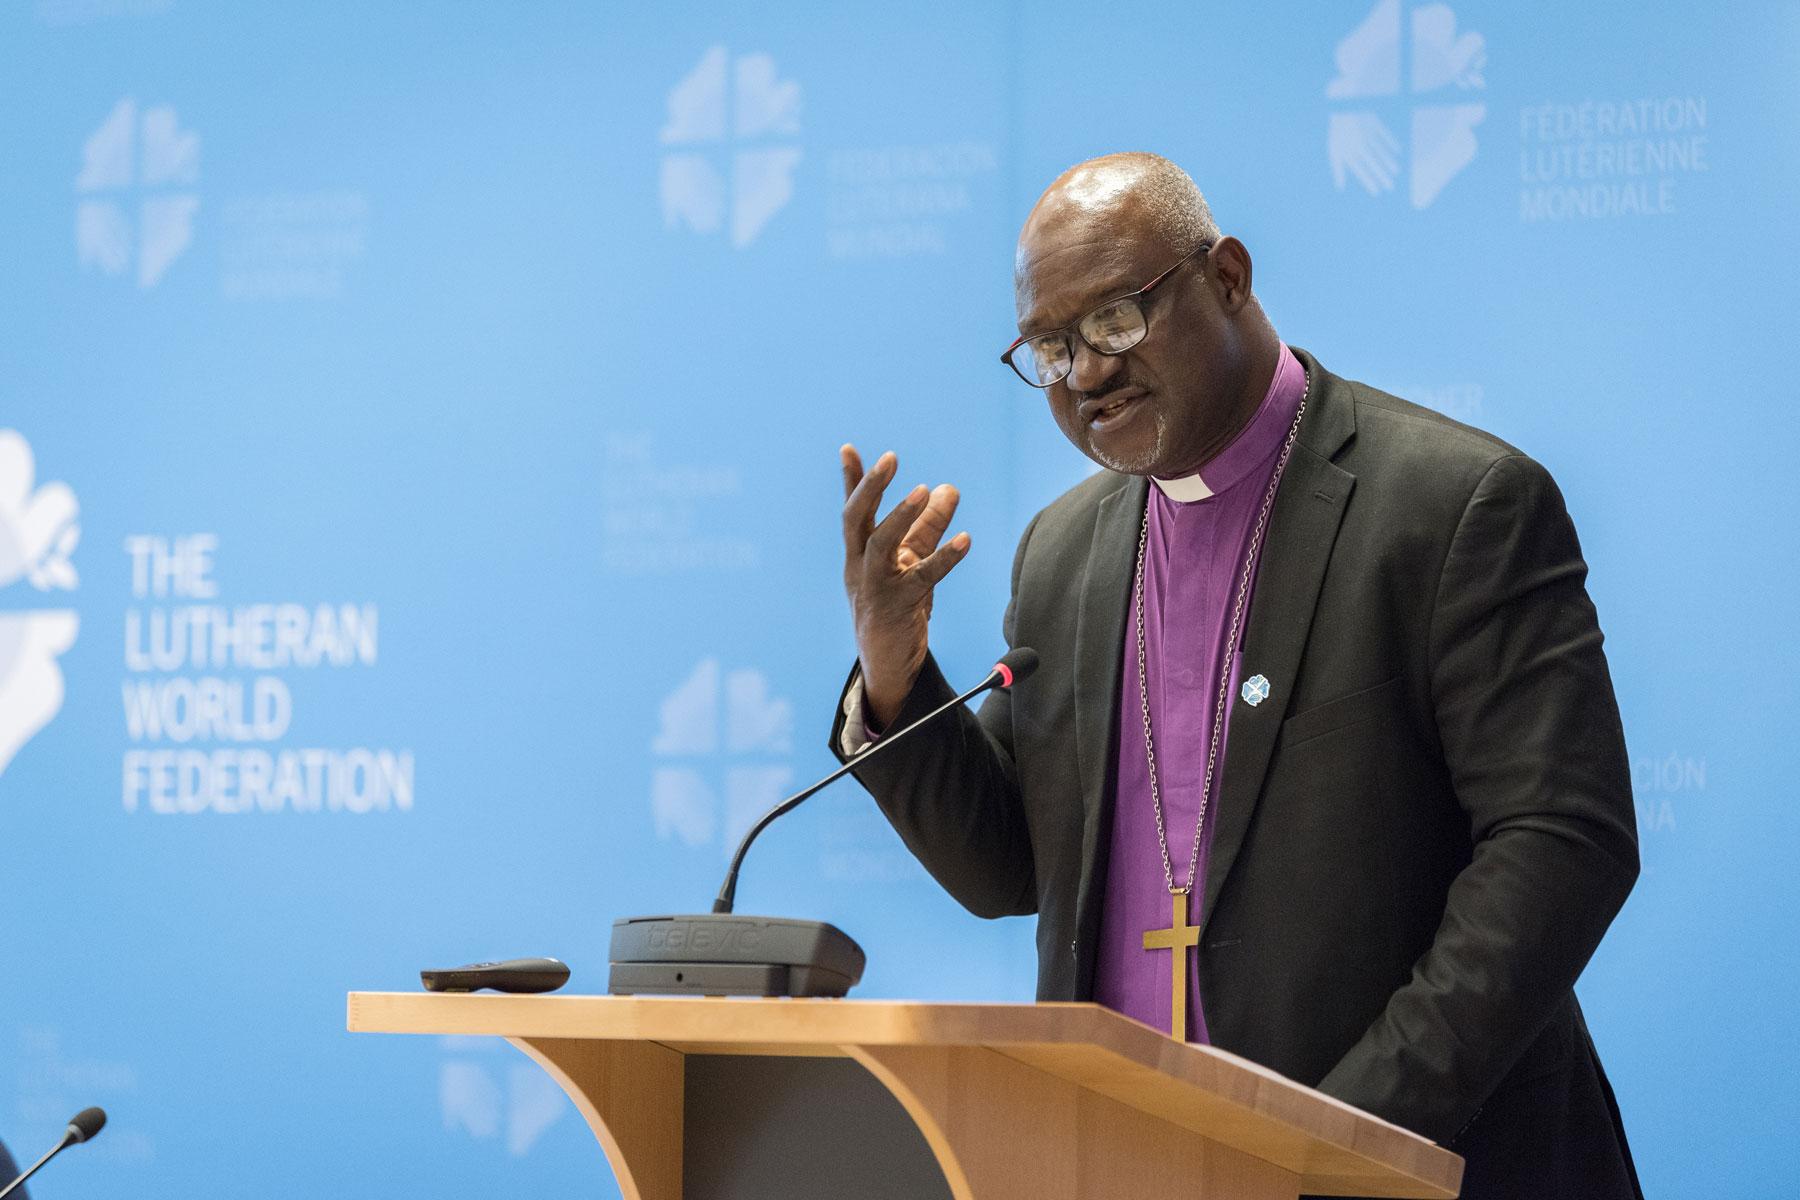 LWF President Archbishop Dr Panti Filibus Musa. Photo: LWF/Albin Hillert